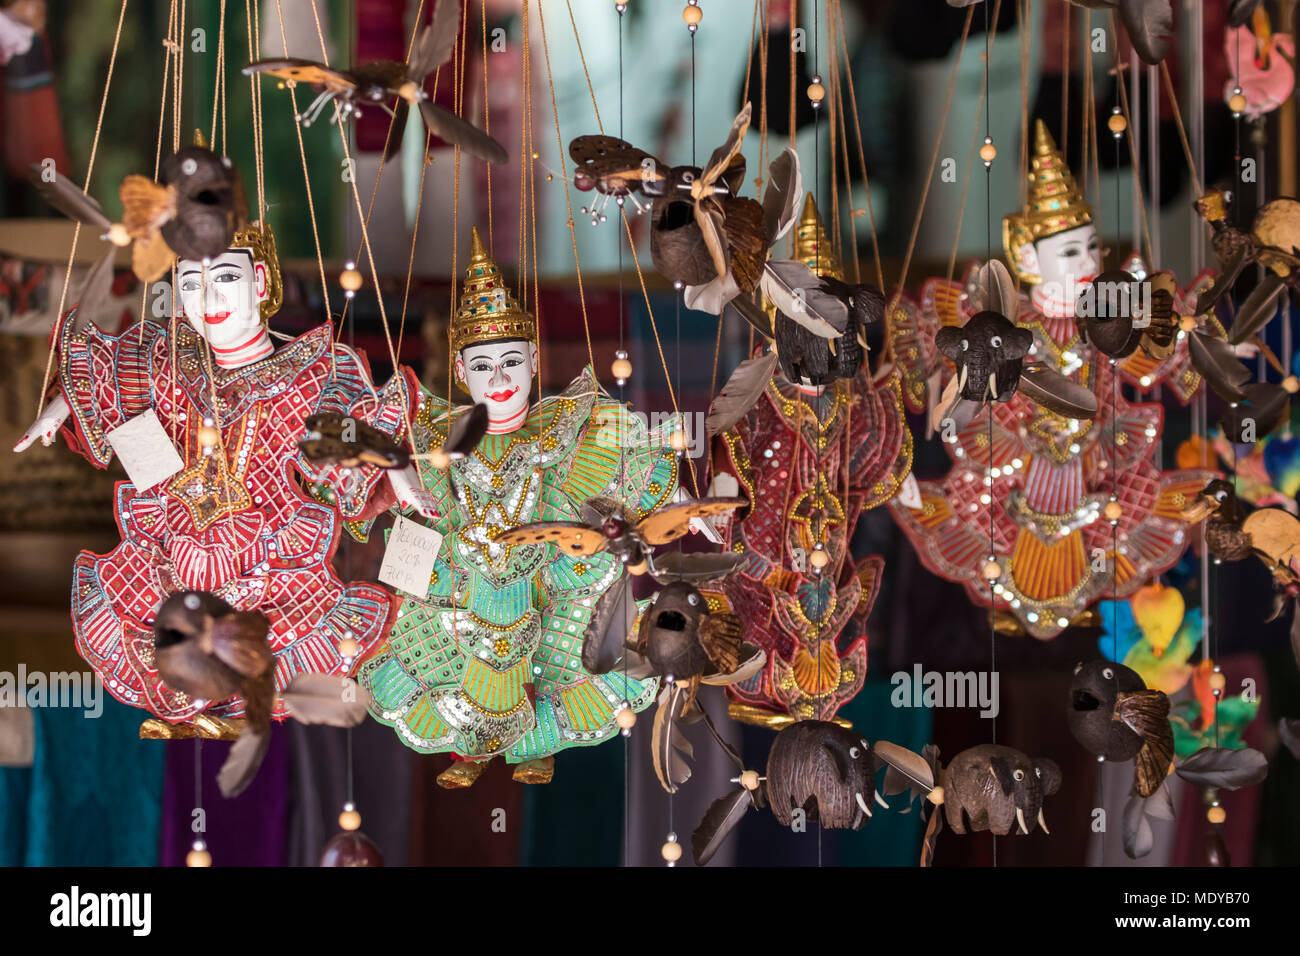 Lao marionettes; Luang Prabang, Laos Stock Photo